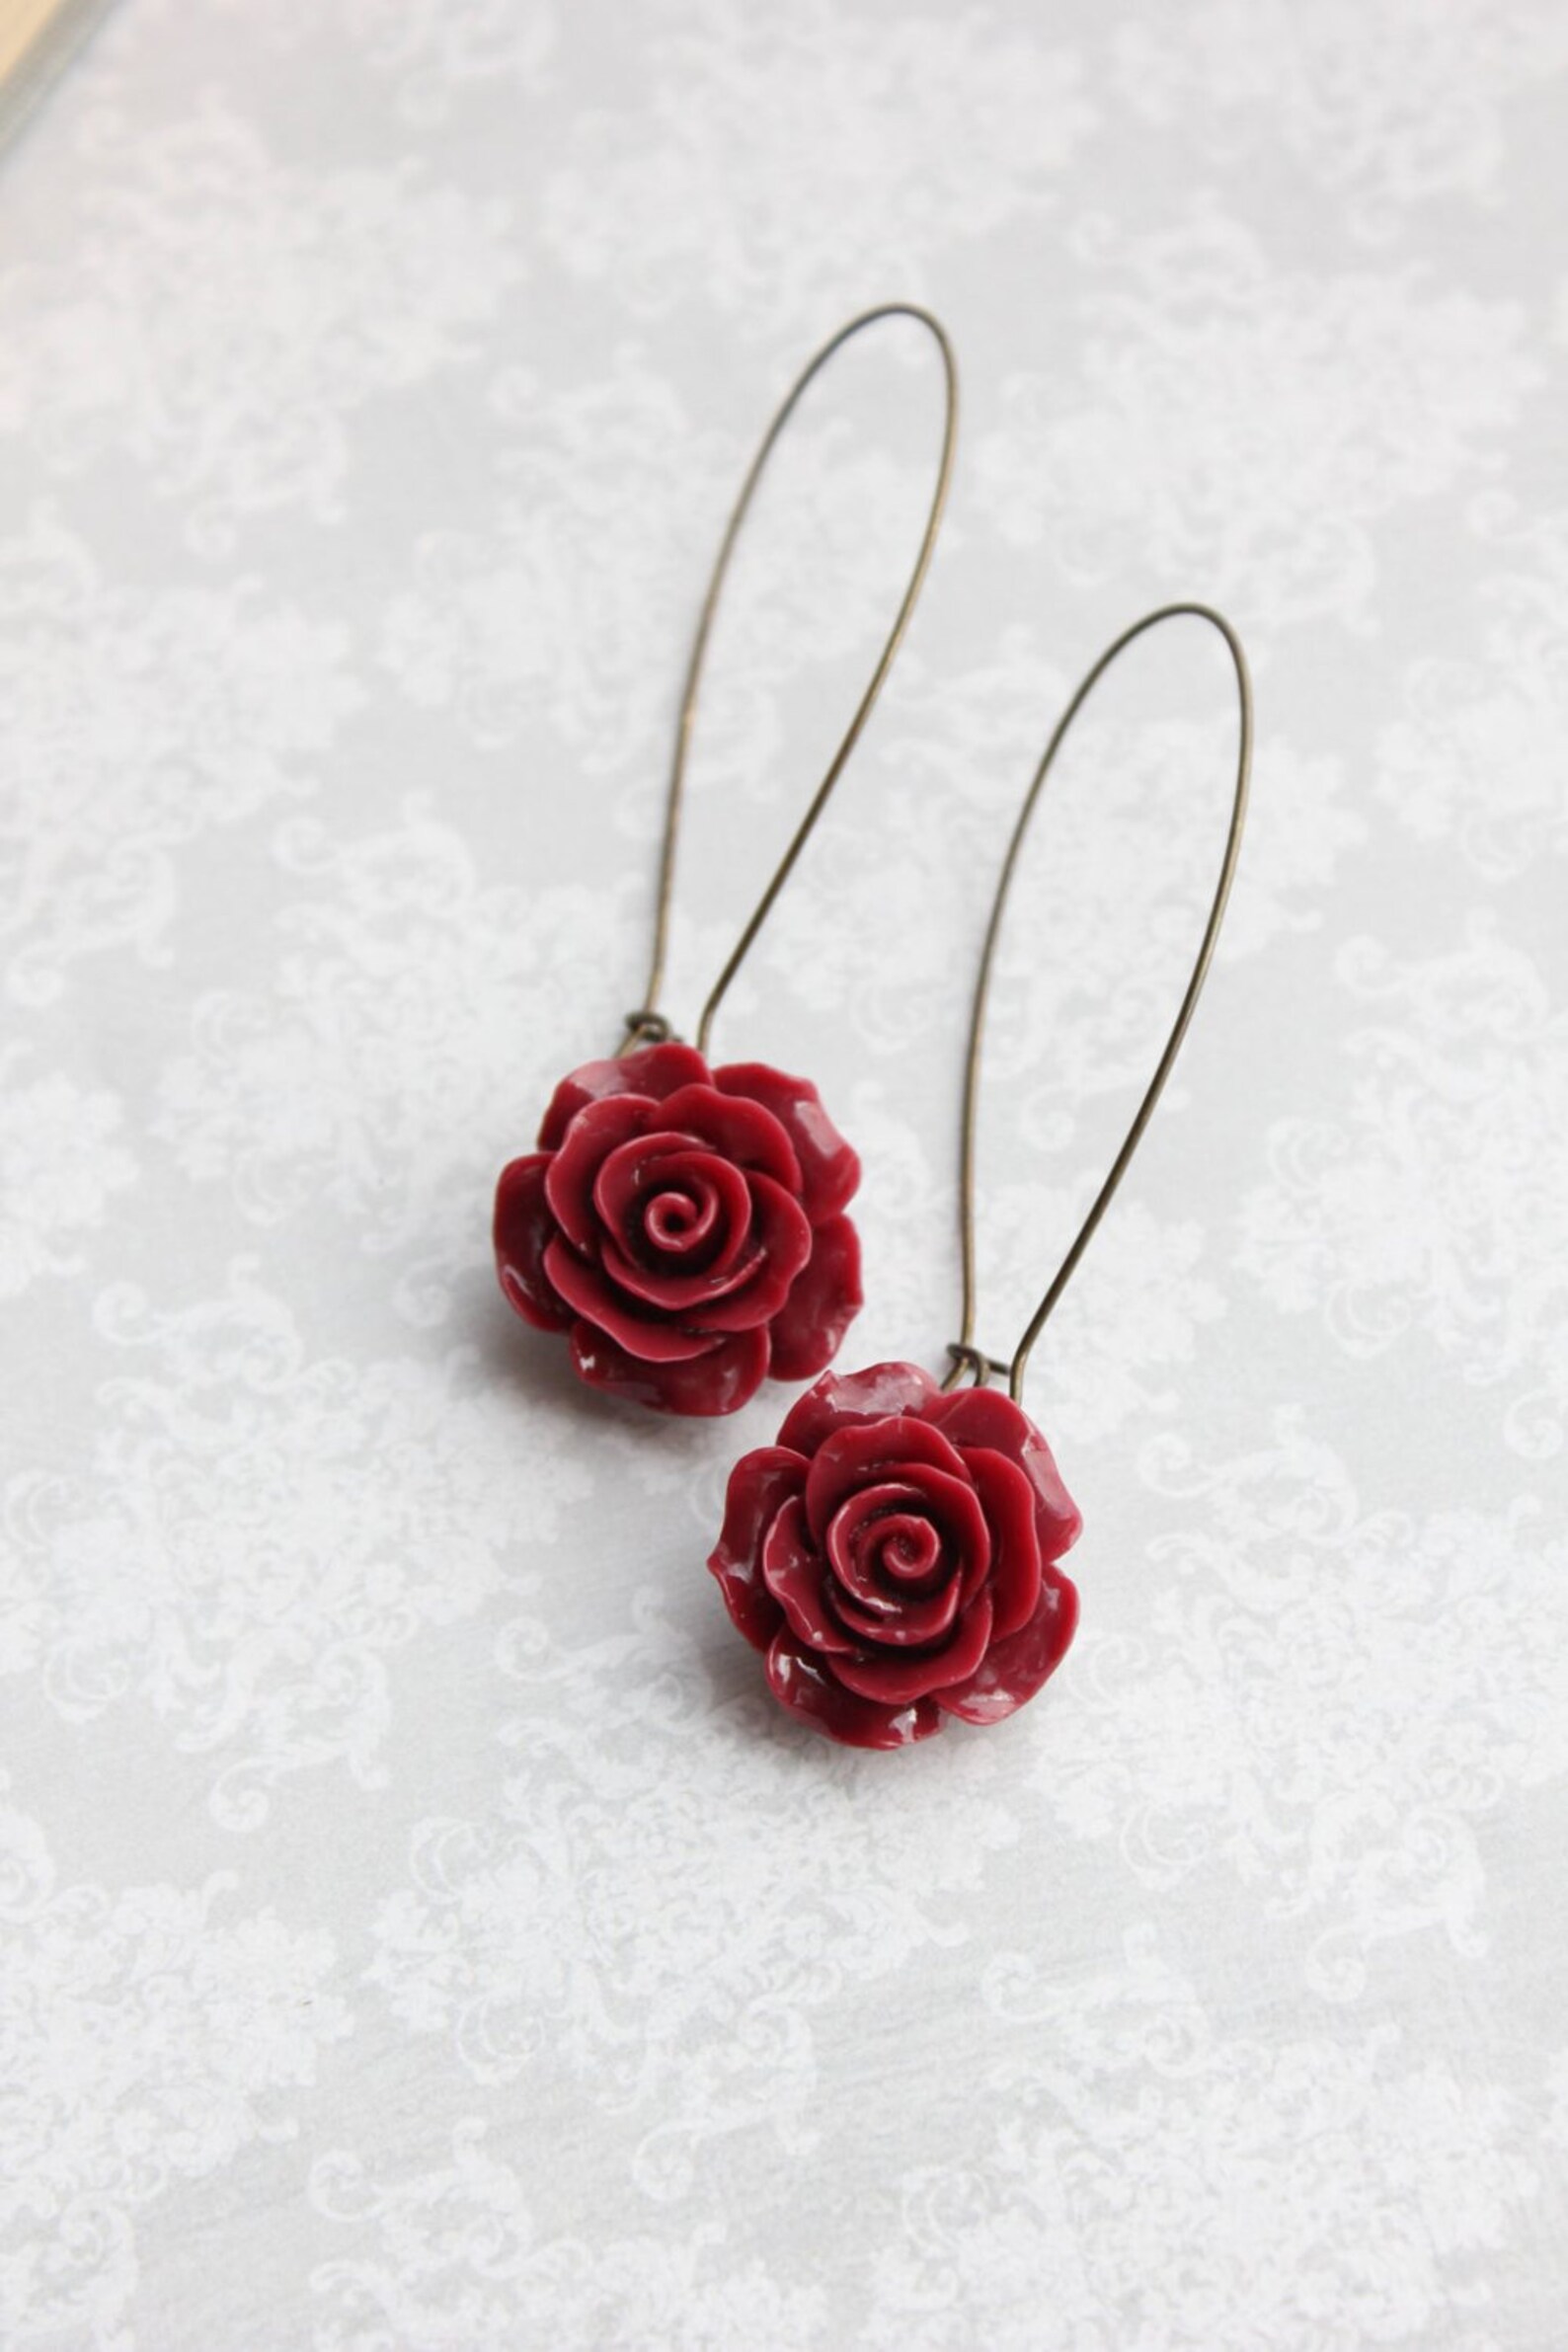 Deep Red Rose Necklace Vintage Inspired Dark Red Floral - Etsy